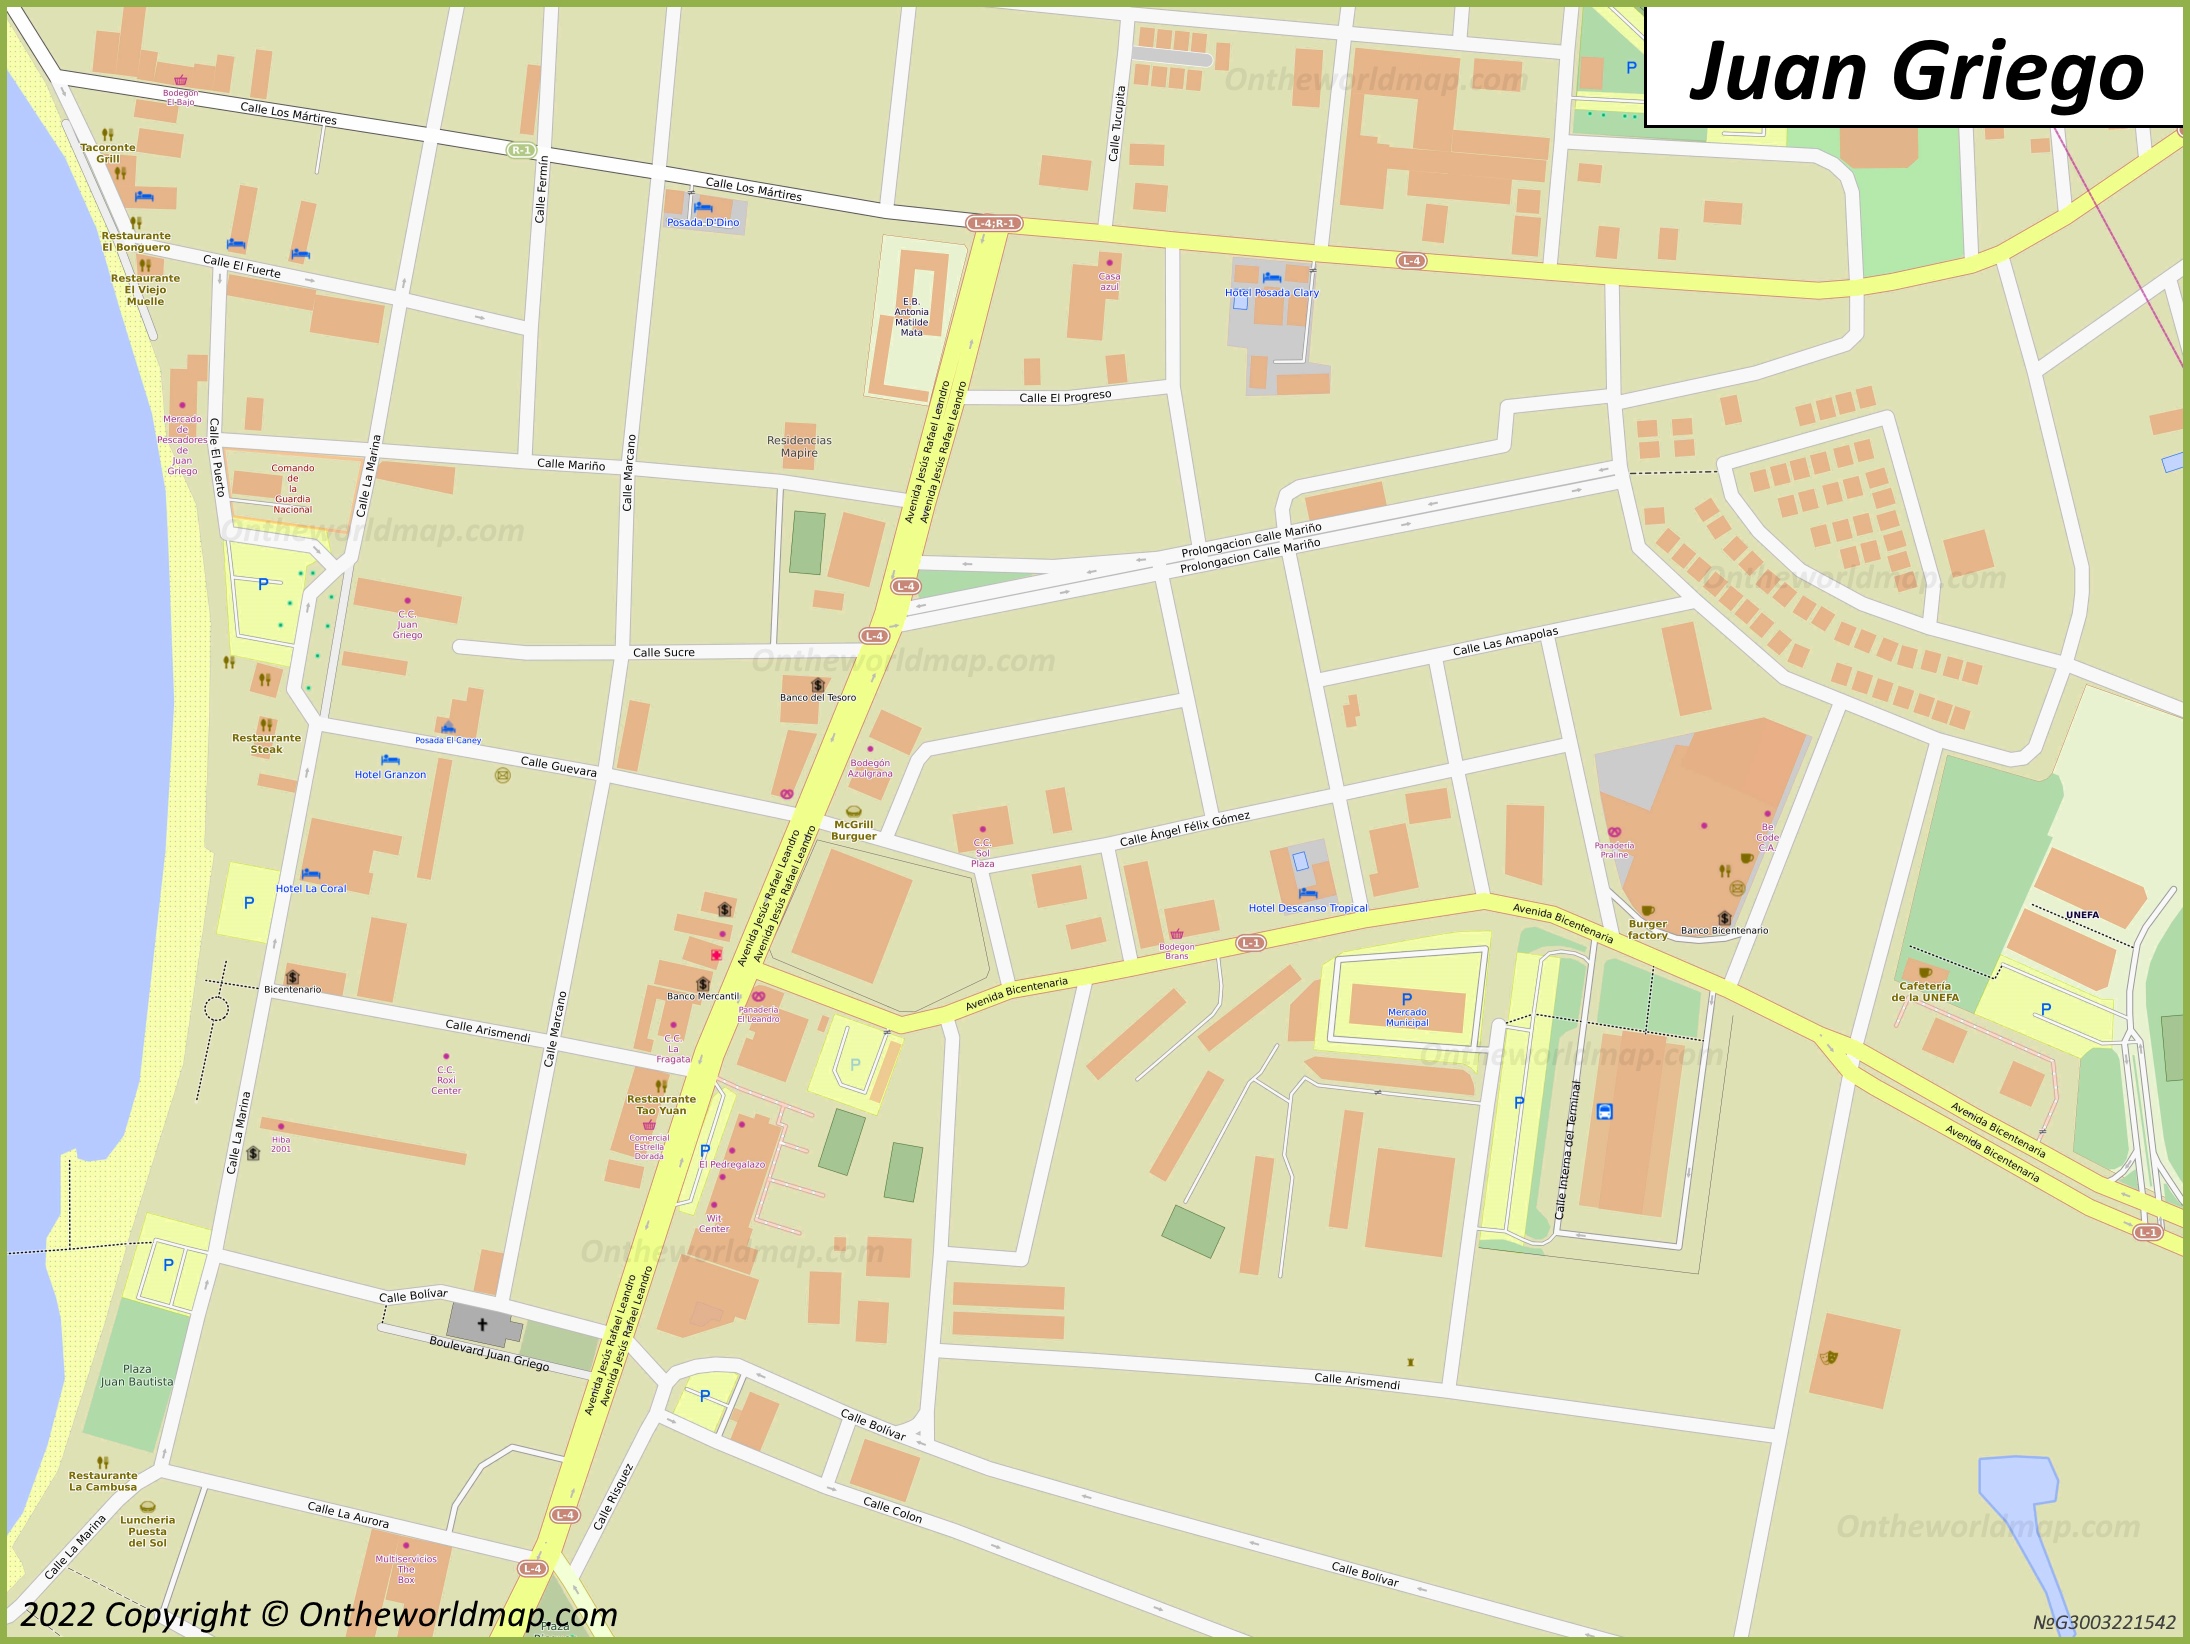 Juan Griego City Centre Map